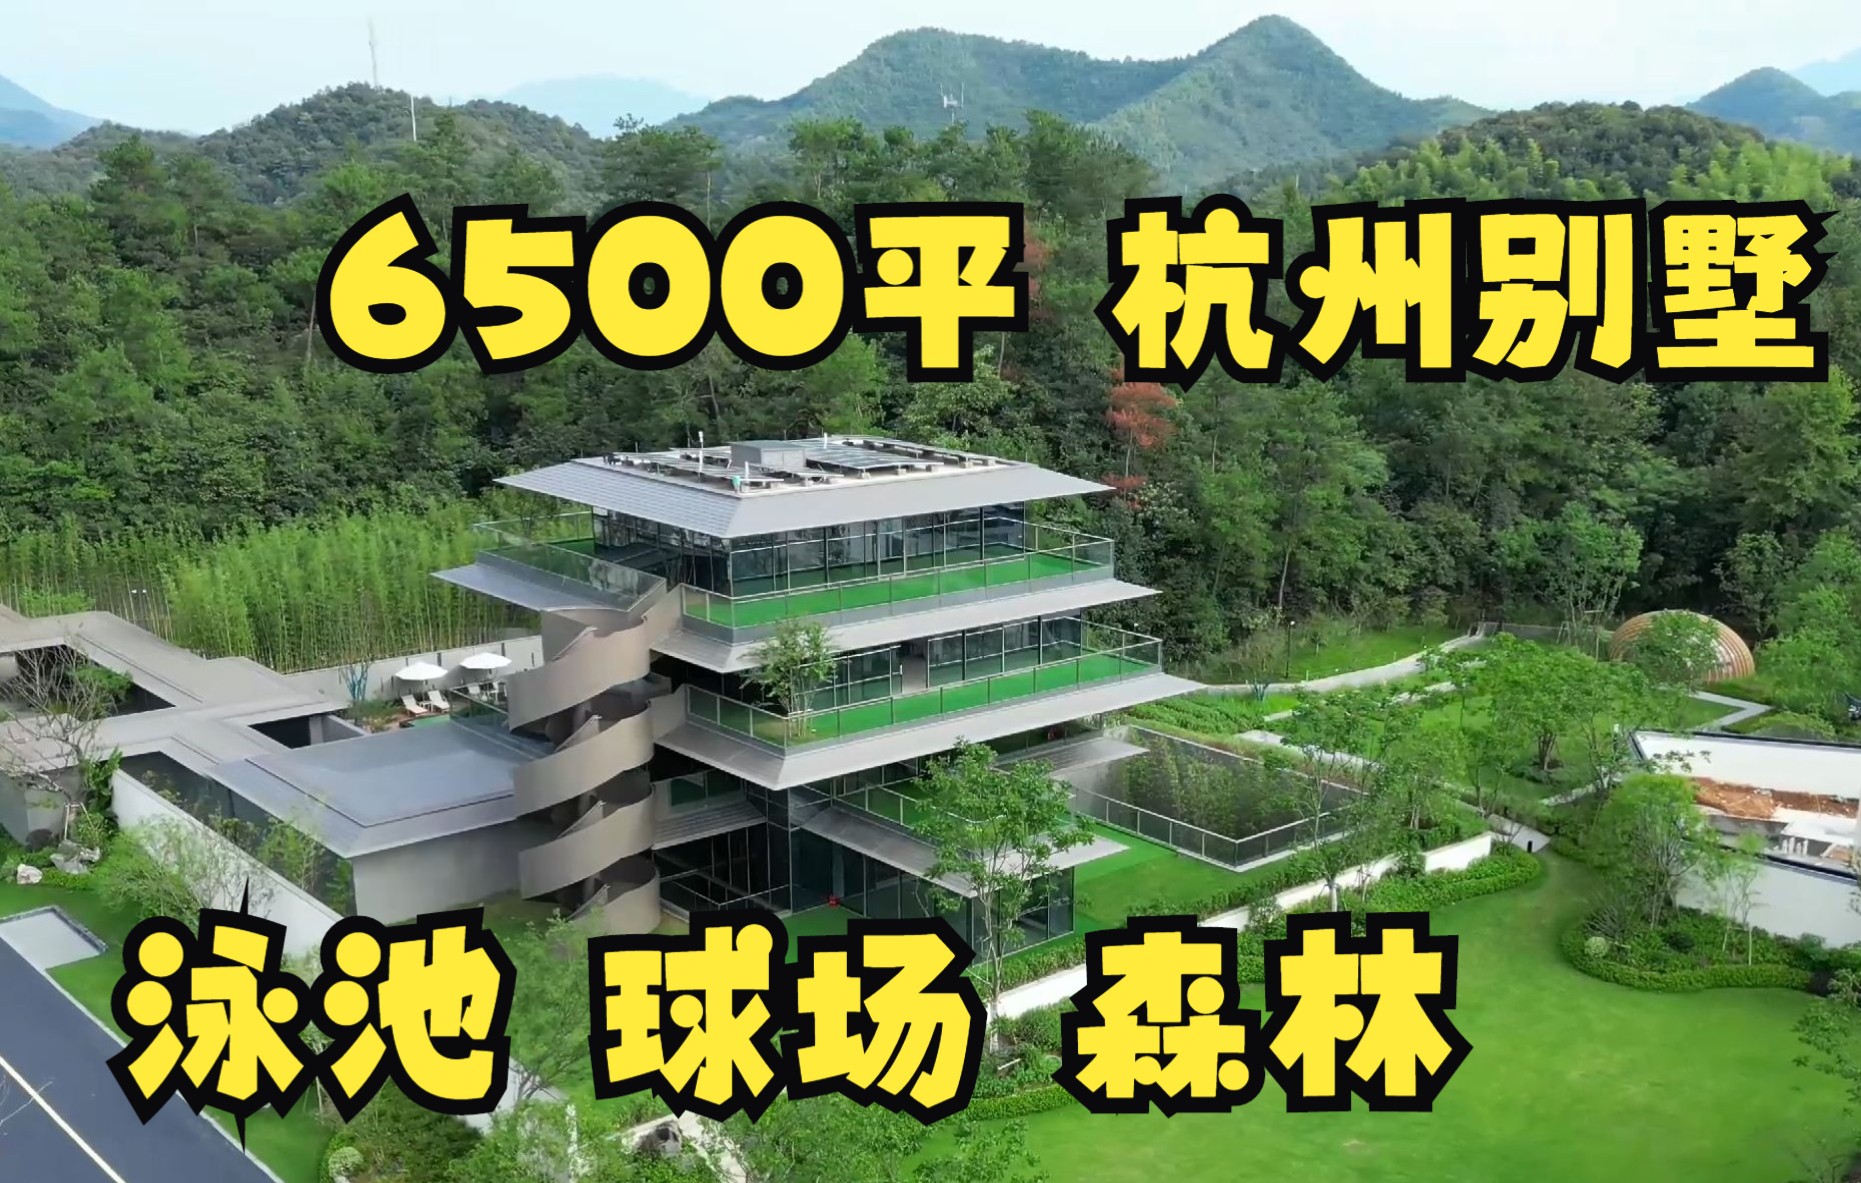 杭州6500平独栋别墅 泳池球场山地森林